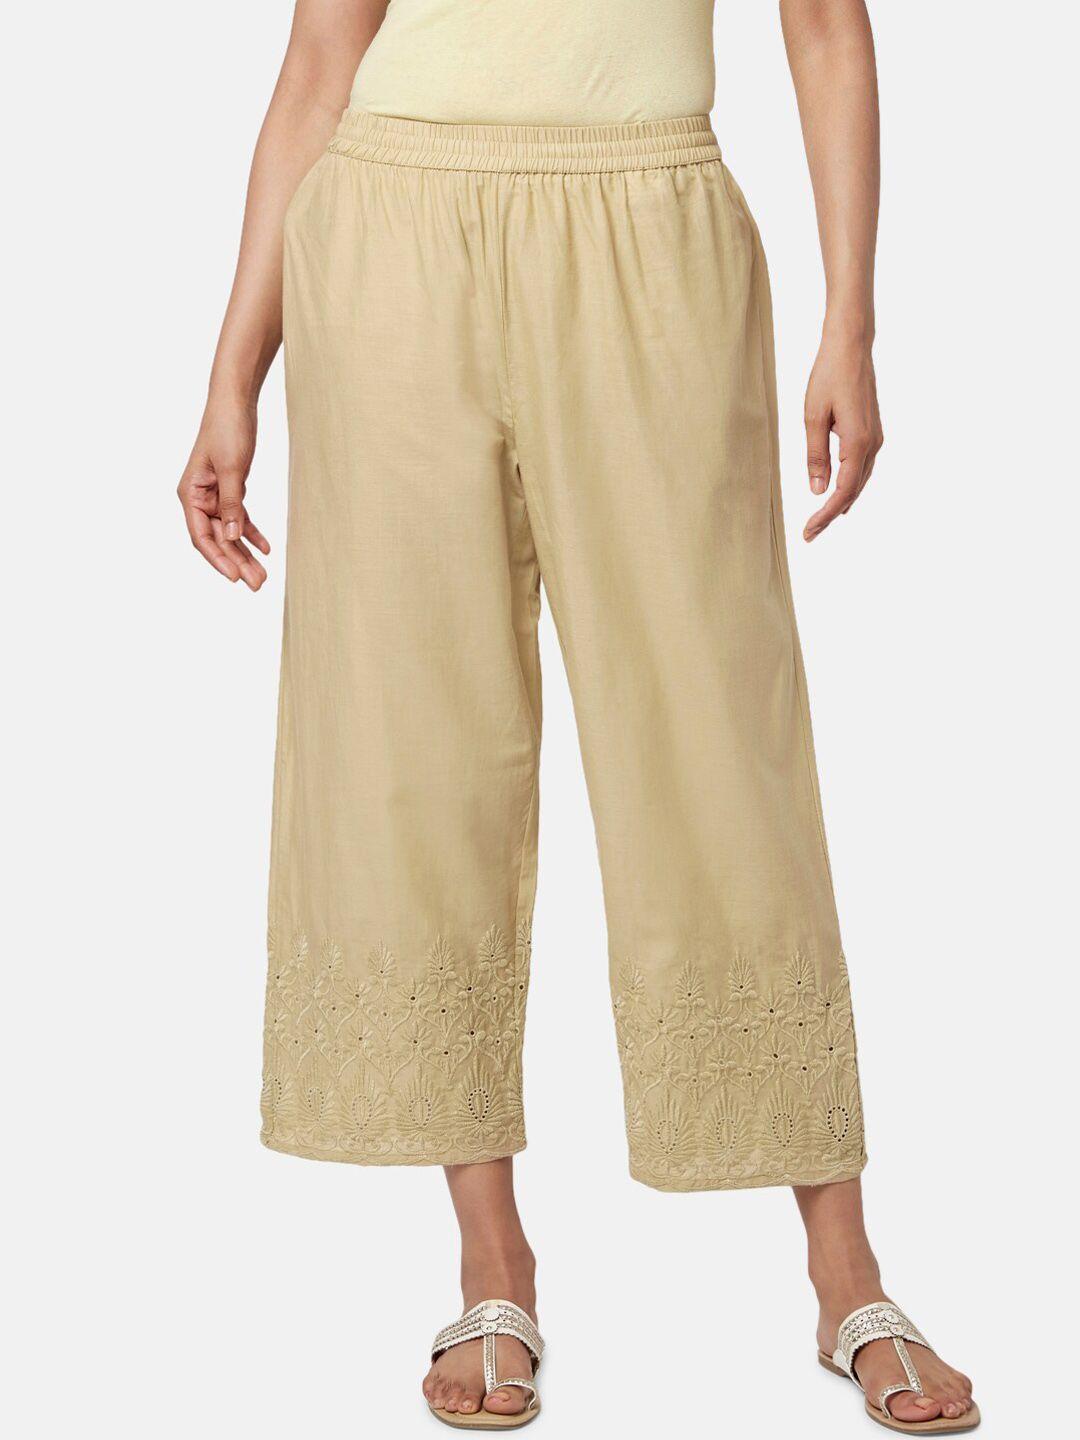 rangmanch by pantaloons women floral cotton trousers